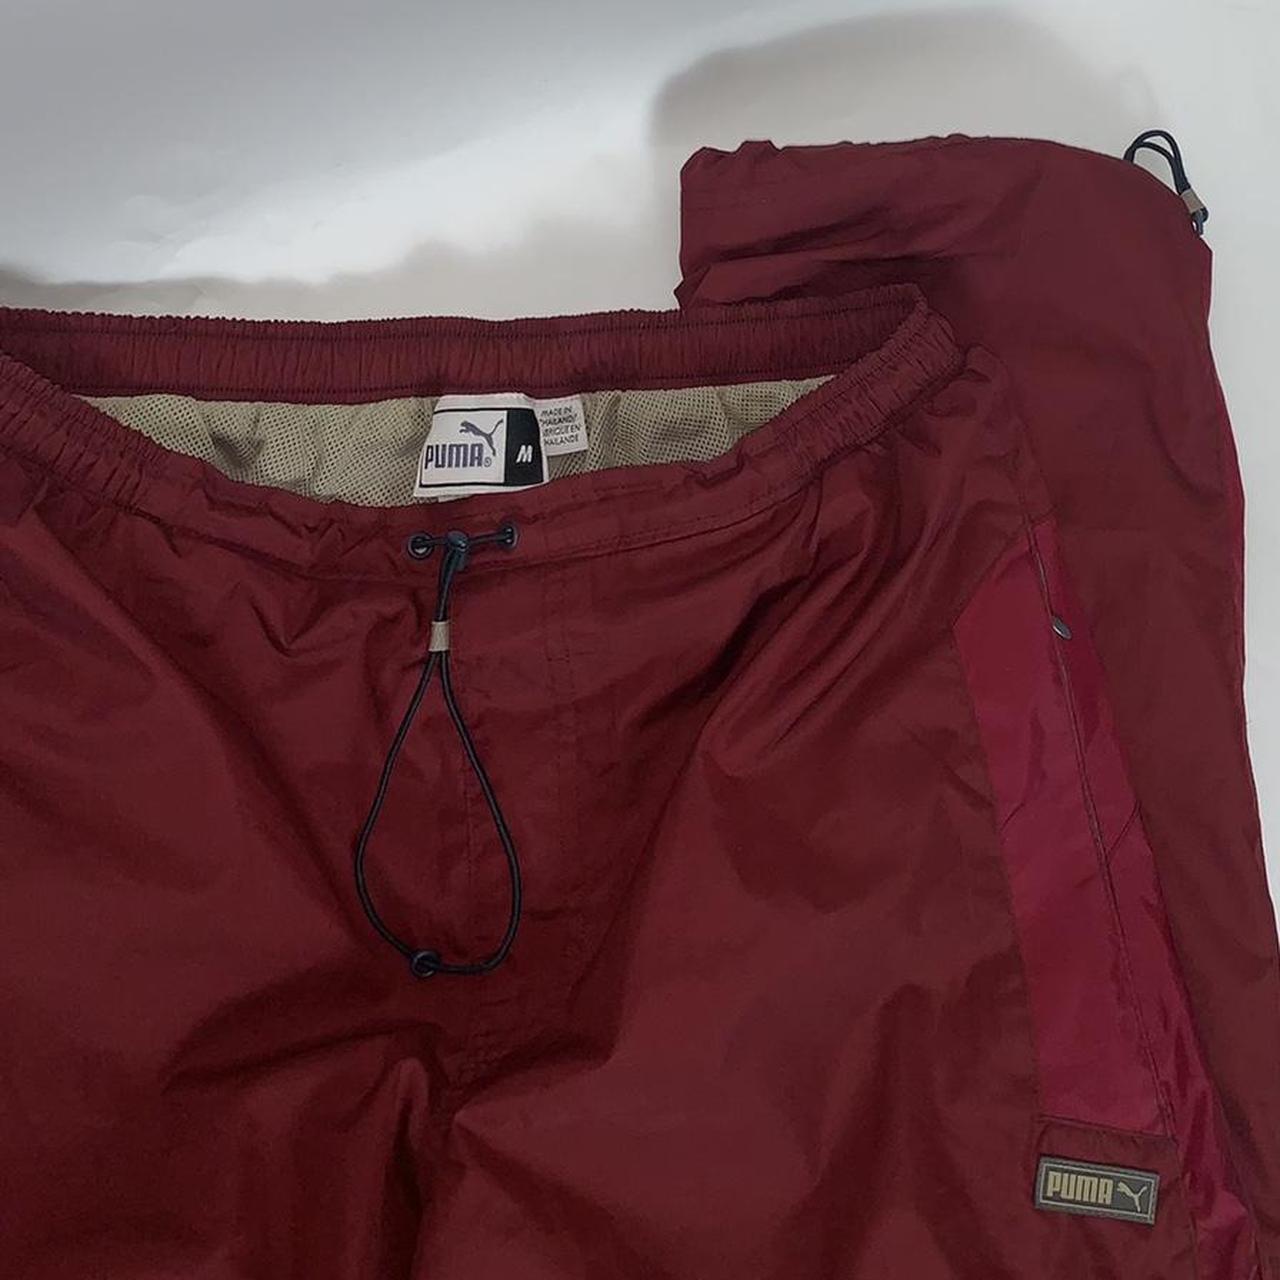 Vintage 90s Puma unisex red baggy parachute pants